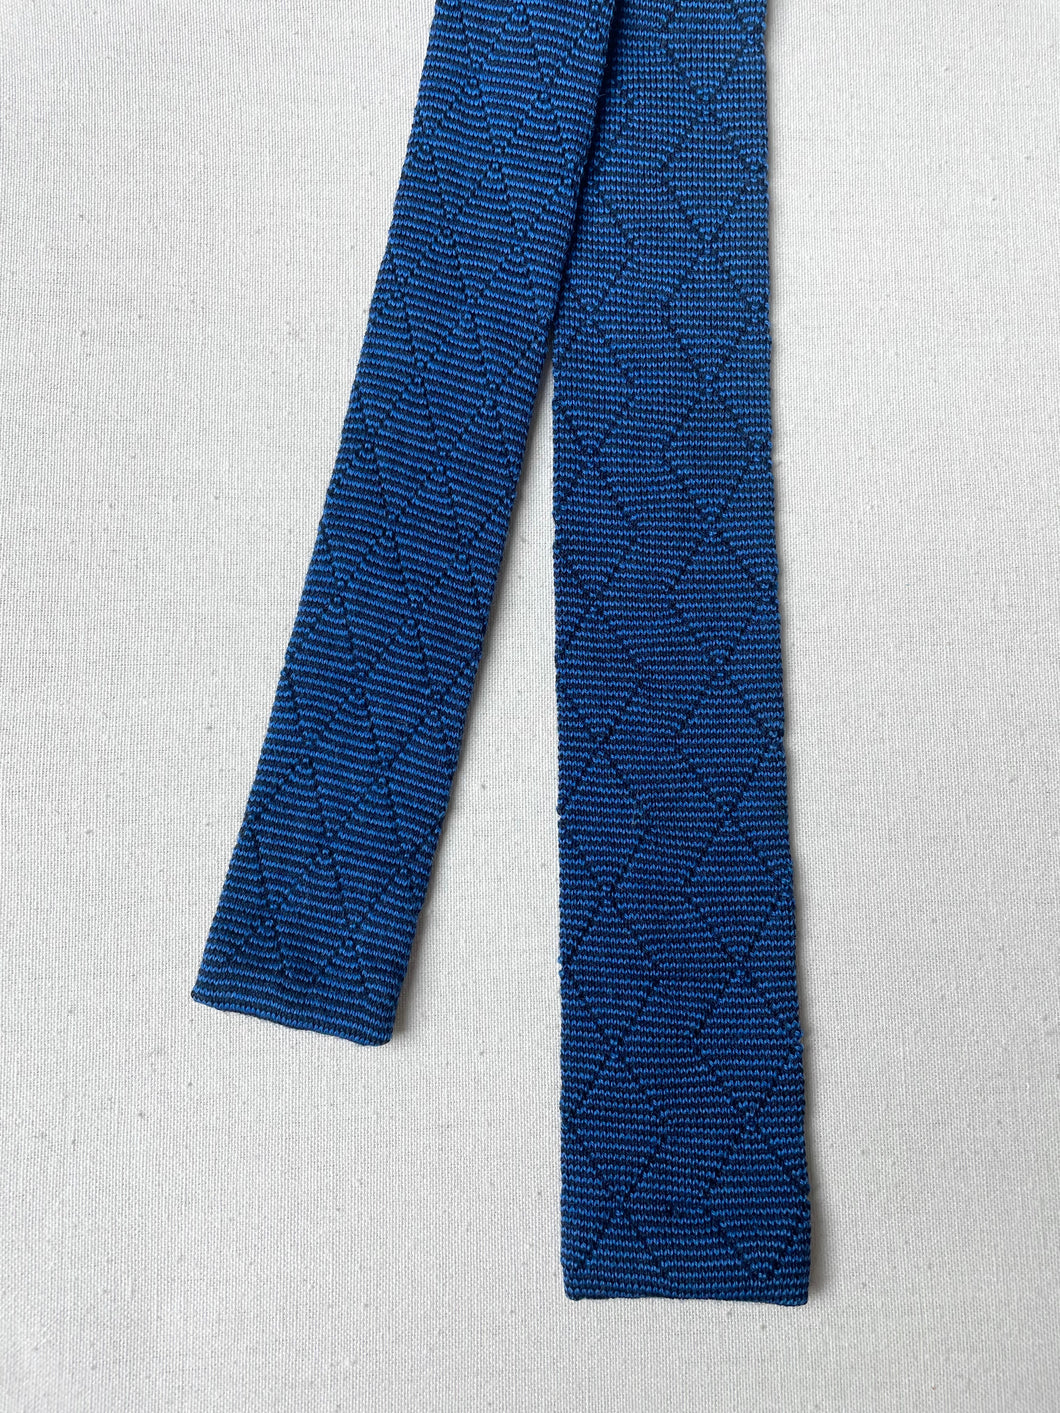 Paco Rabanne Paris cravate maille vintage en laine